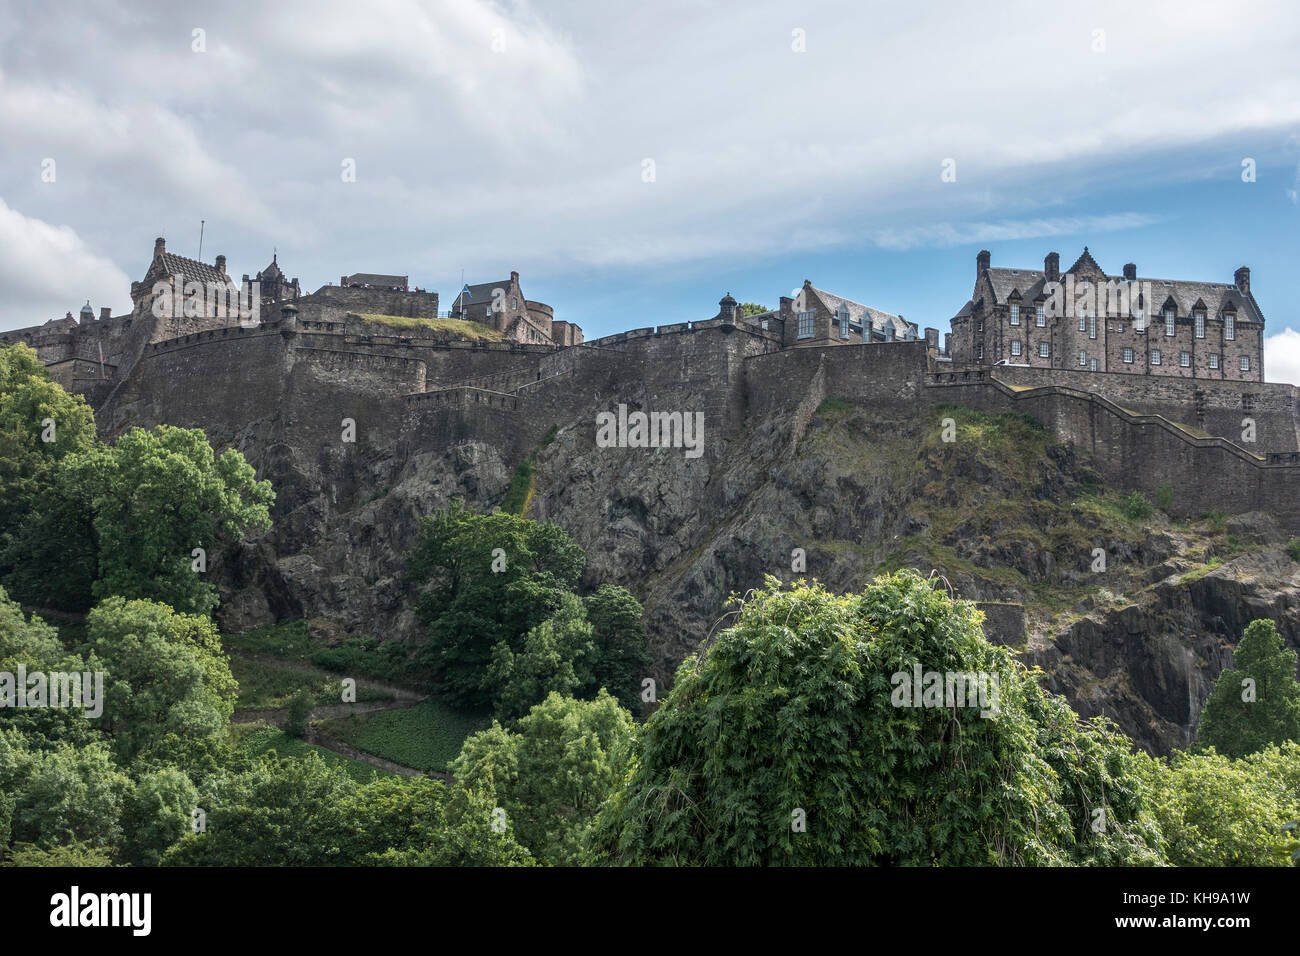 Das Edinburgh Castle, eine Festung, die auf Felsen gebaut ist, dominiert die Skyline von Edinburgh Hauptstadt von Schottland Stockfoto